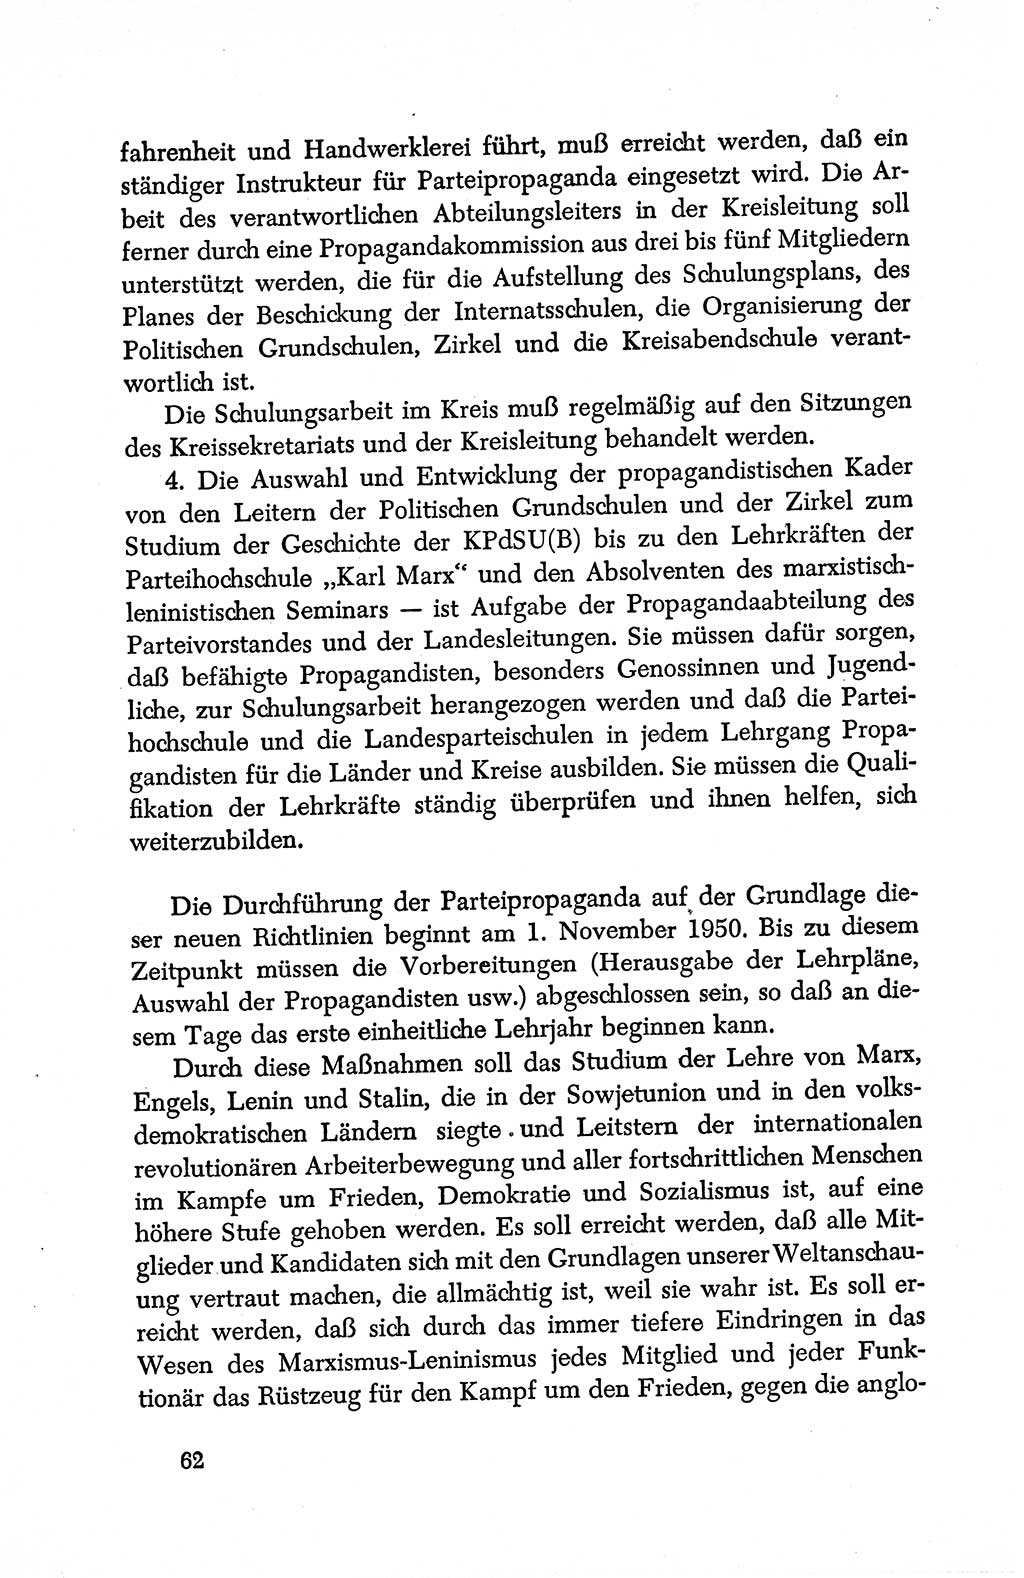 Dokumente der Sozialistischen Einheitspartei Deutschlands (SED) [Deutsche Demokratische Republik (DDR)] 1950-1952, Seite 62 (Dok. SED DDR 1950-1952, S. 62)